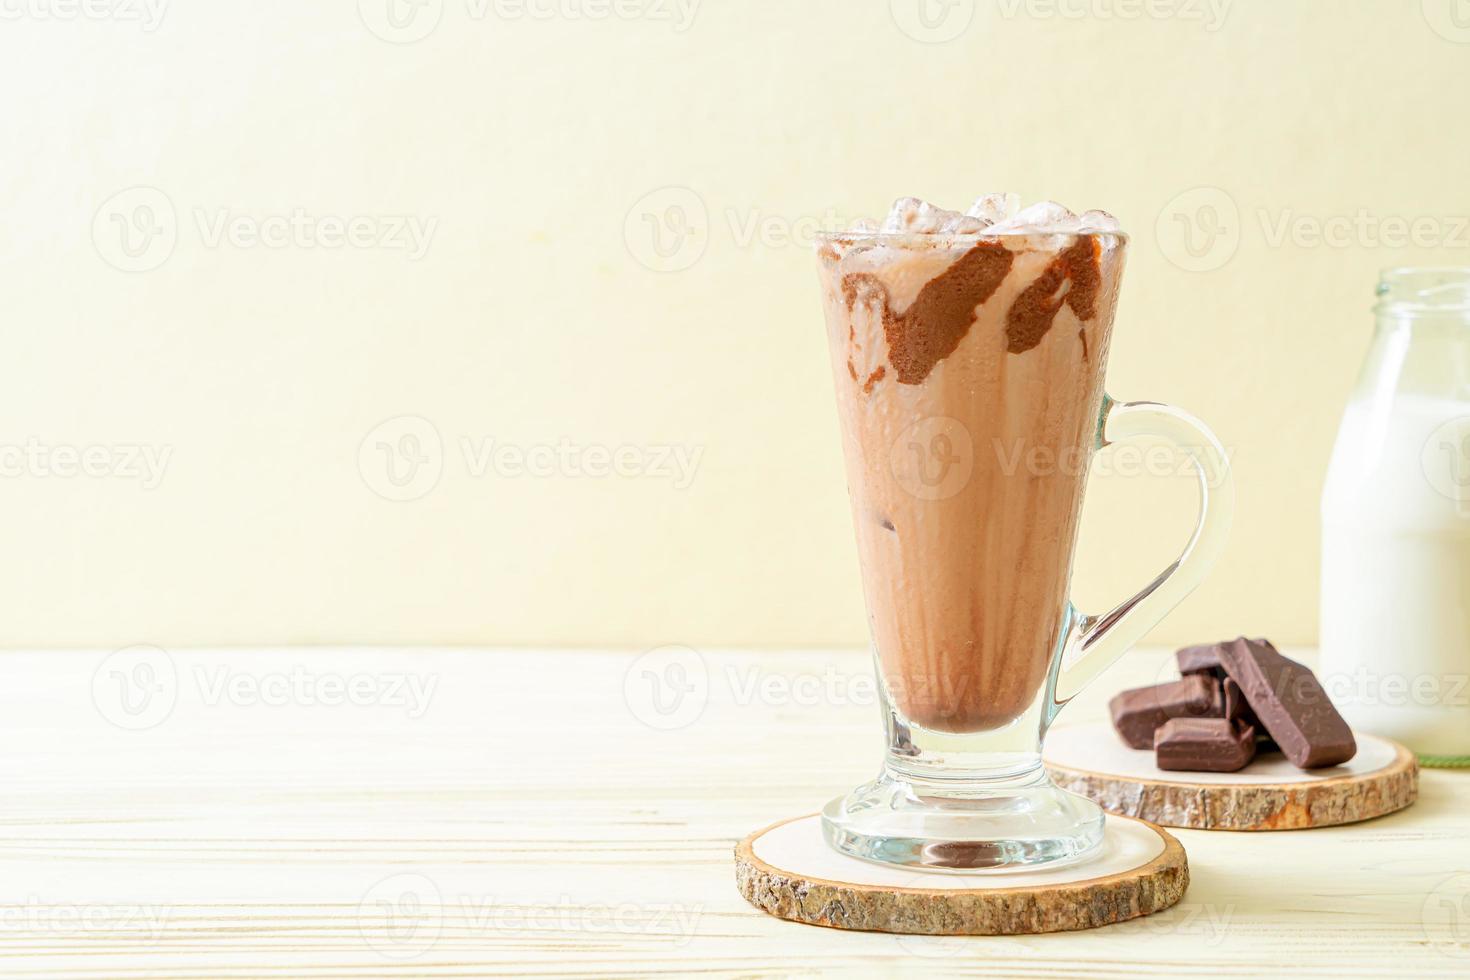 boisson glacée au lait frappé au chocolat photo